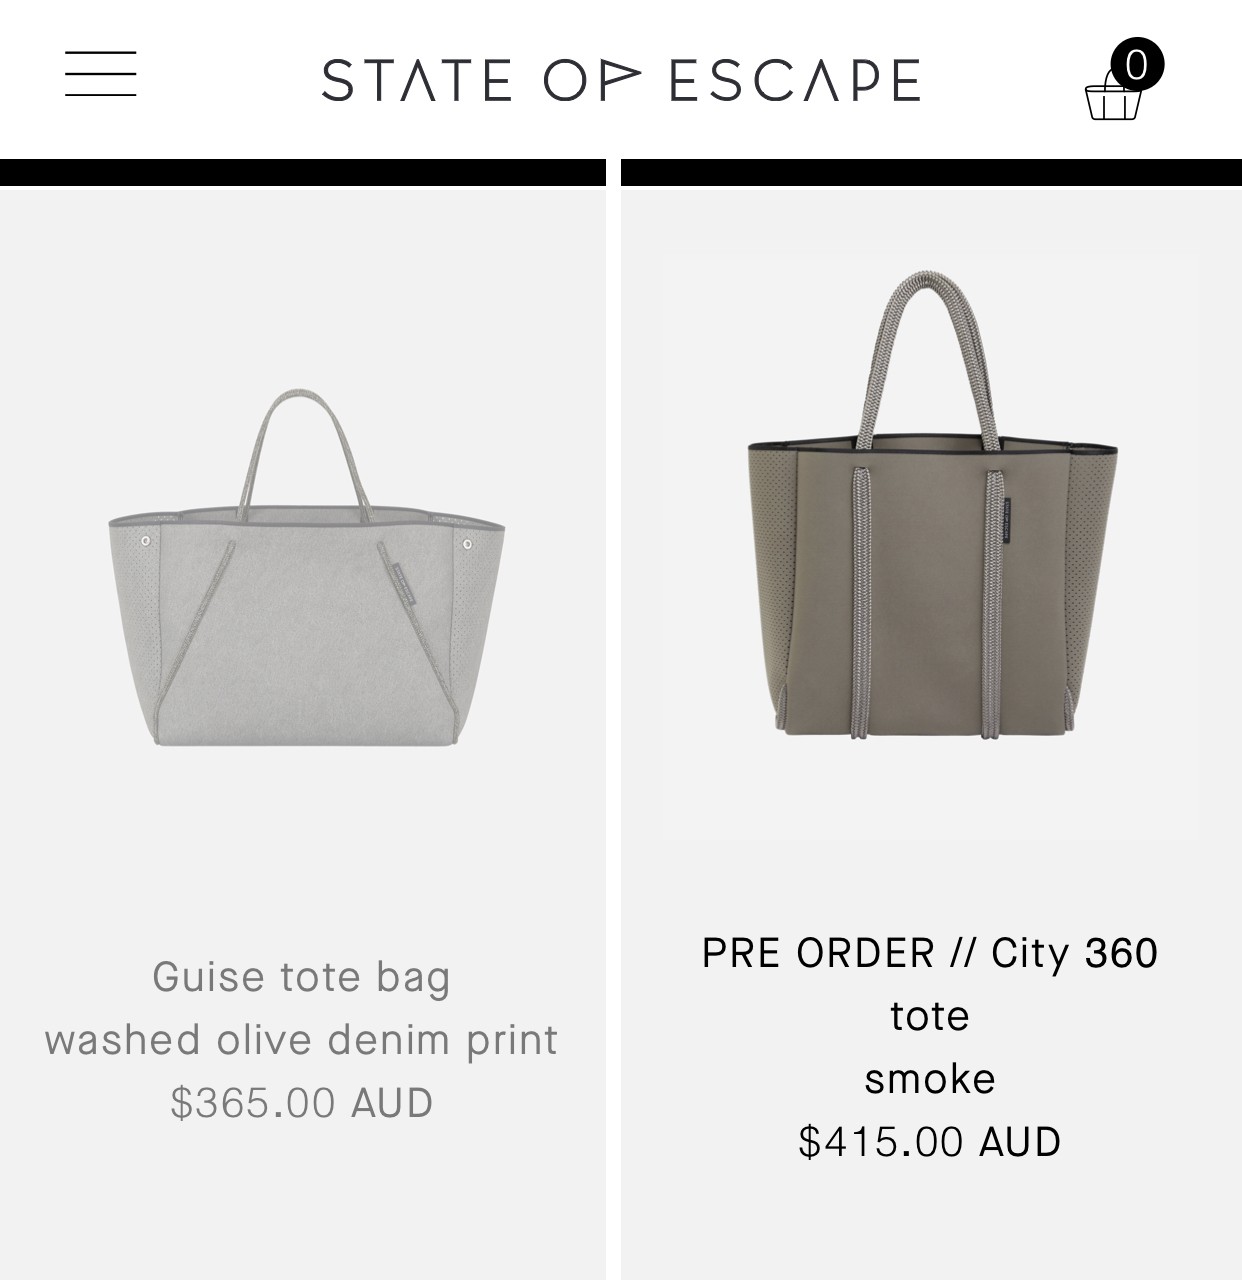 ステイトオブエスケープのオーストラリア公式サイトの商品ページ